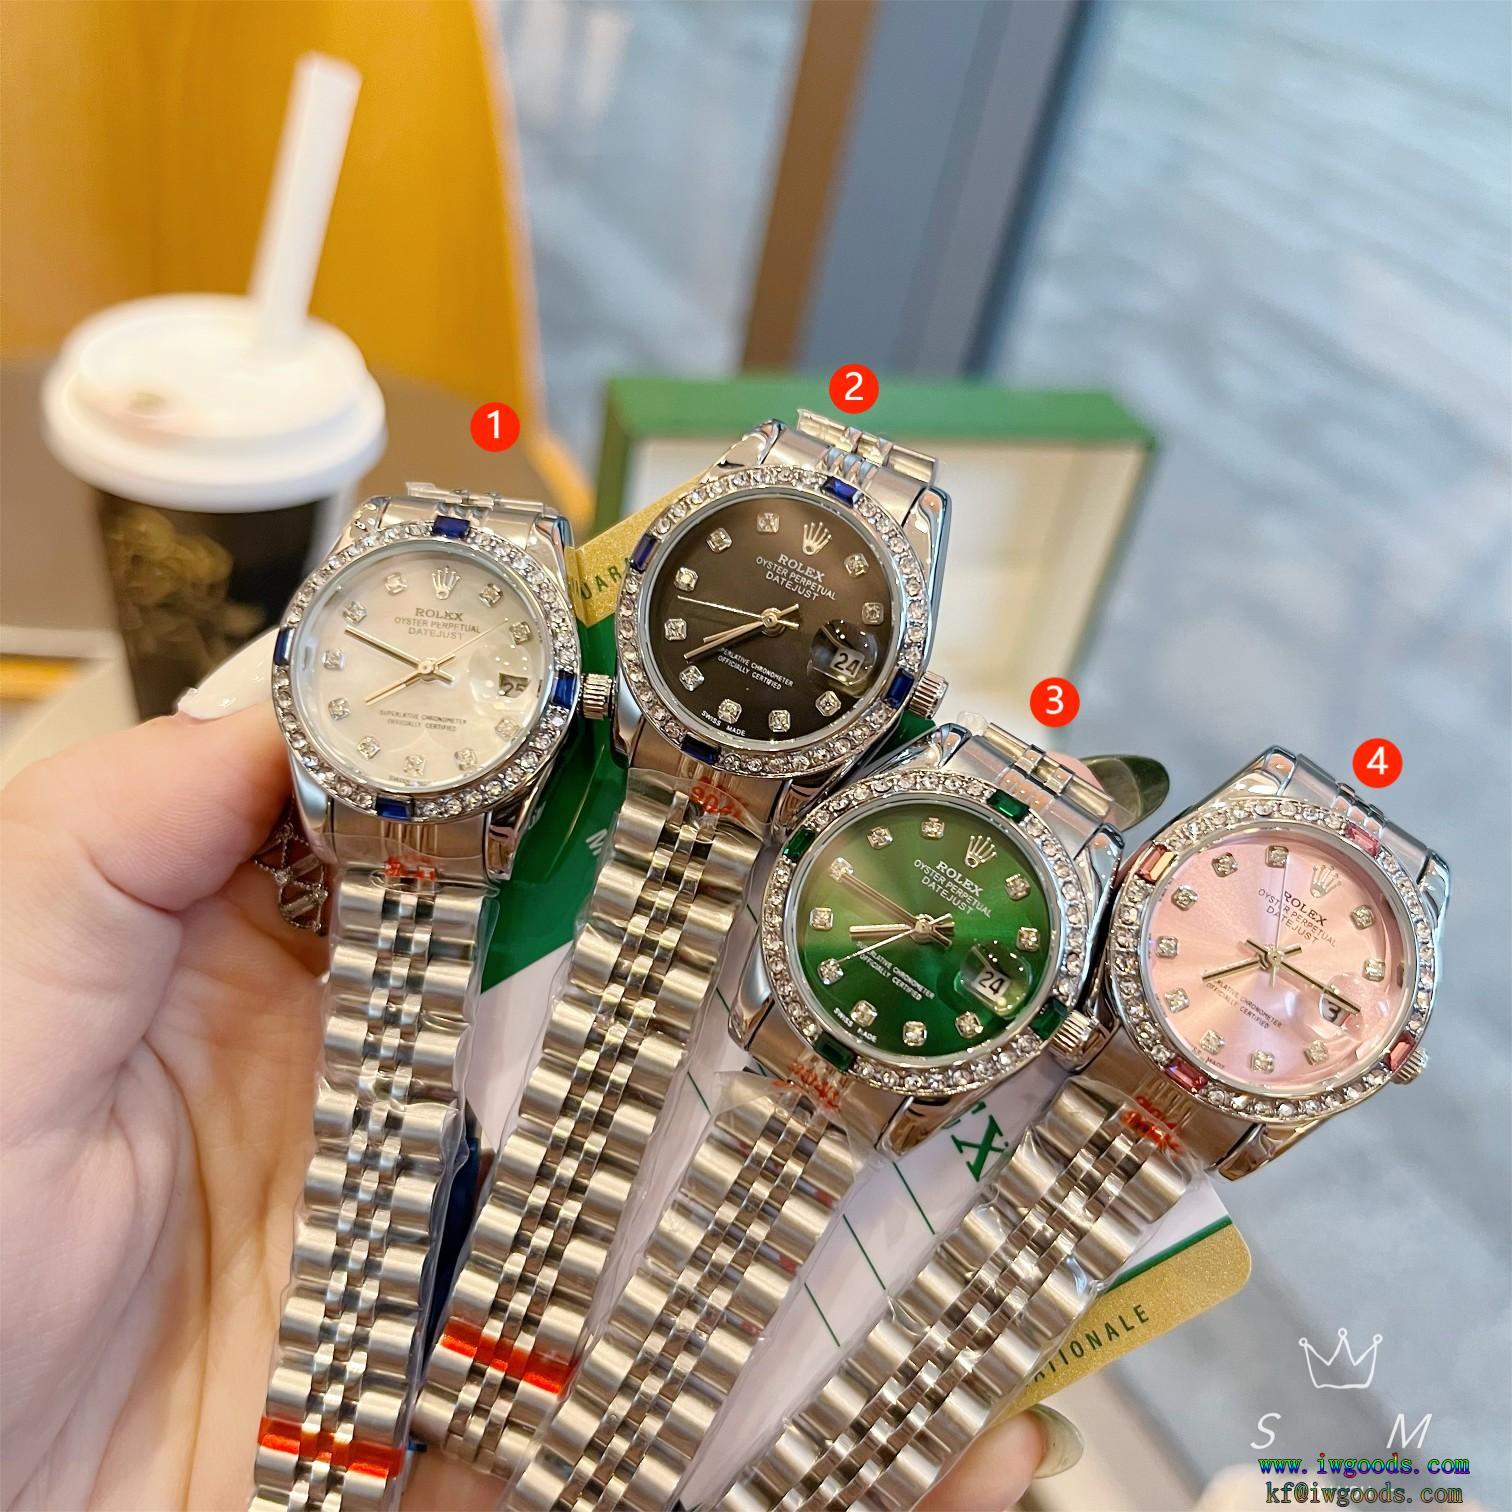 偽物 ブランド 販売レディース腕時計ロレックスROLEX日本未入荷期間限定価格